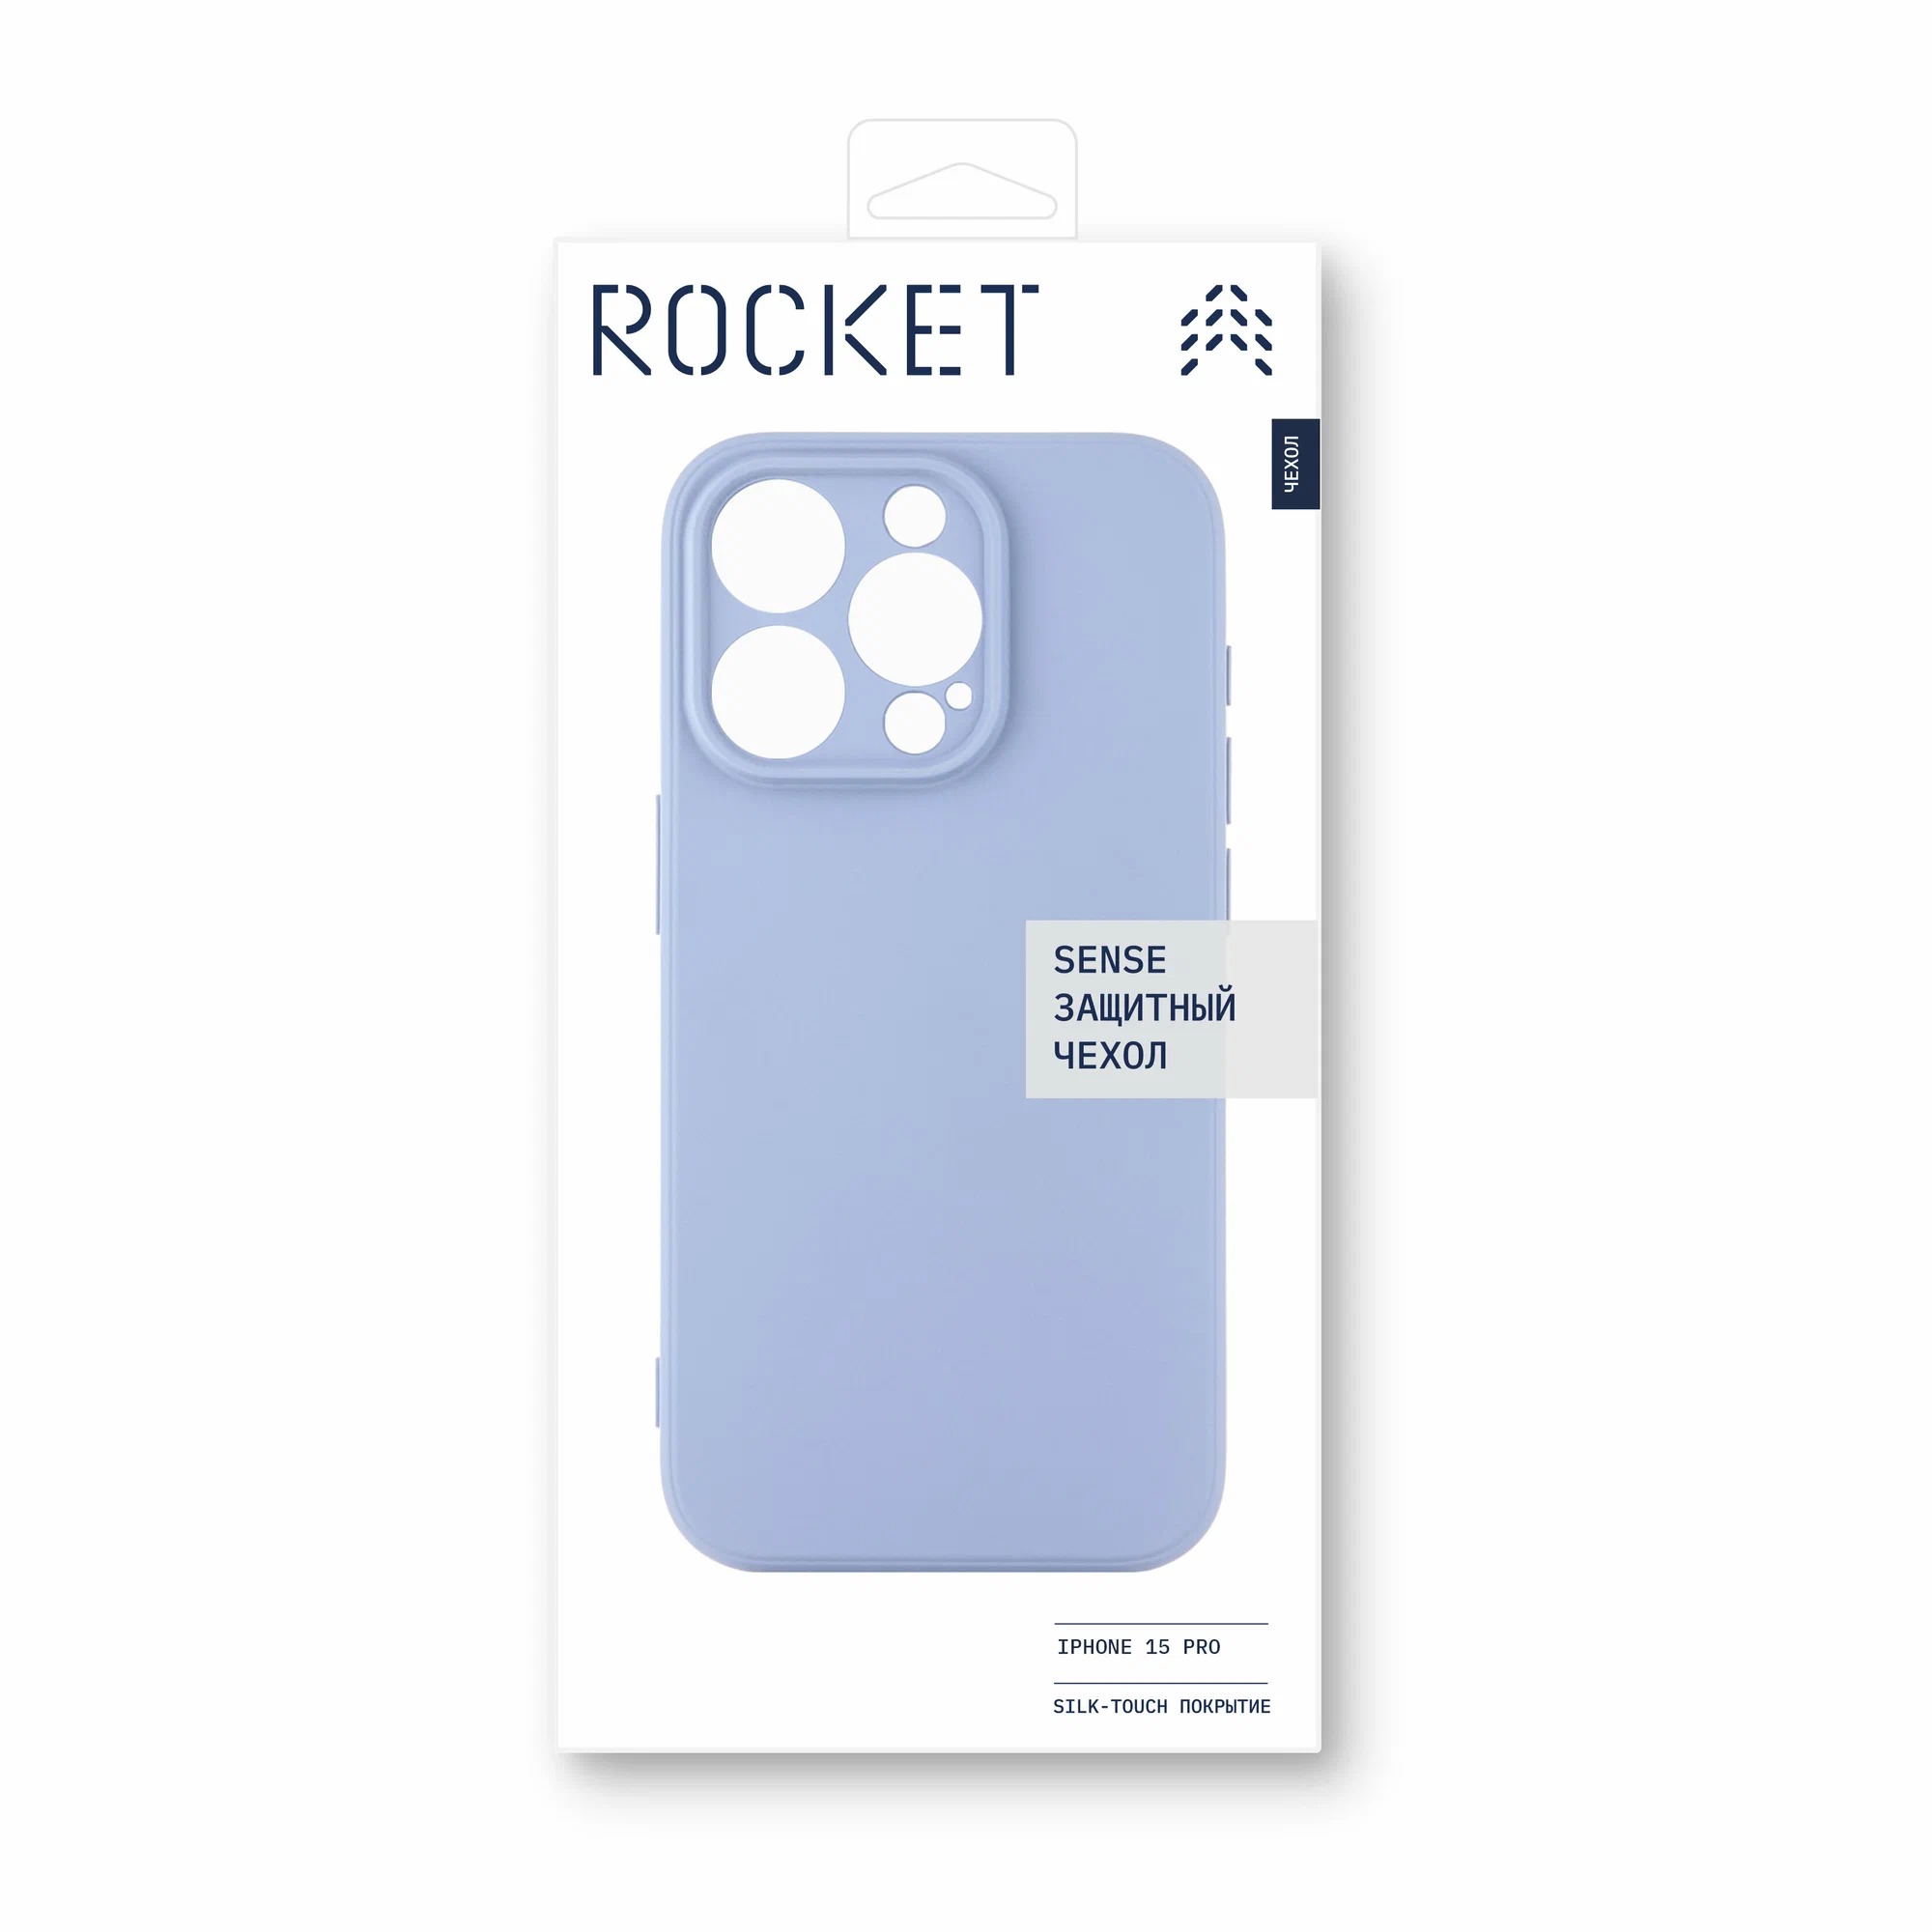 Чехол защитный Rocket Sense для iPhone 15 Pro, soft-touch матовый, TPU, фиолетовый